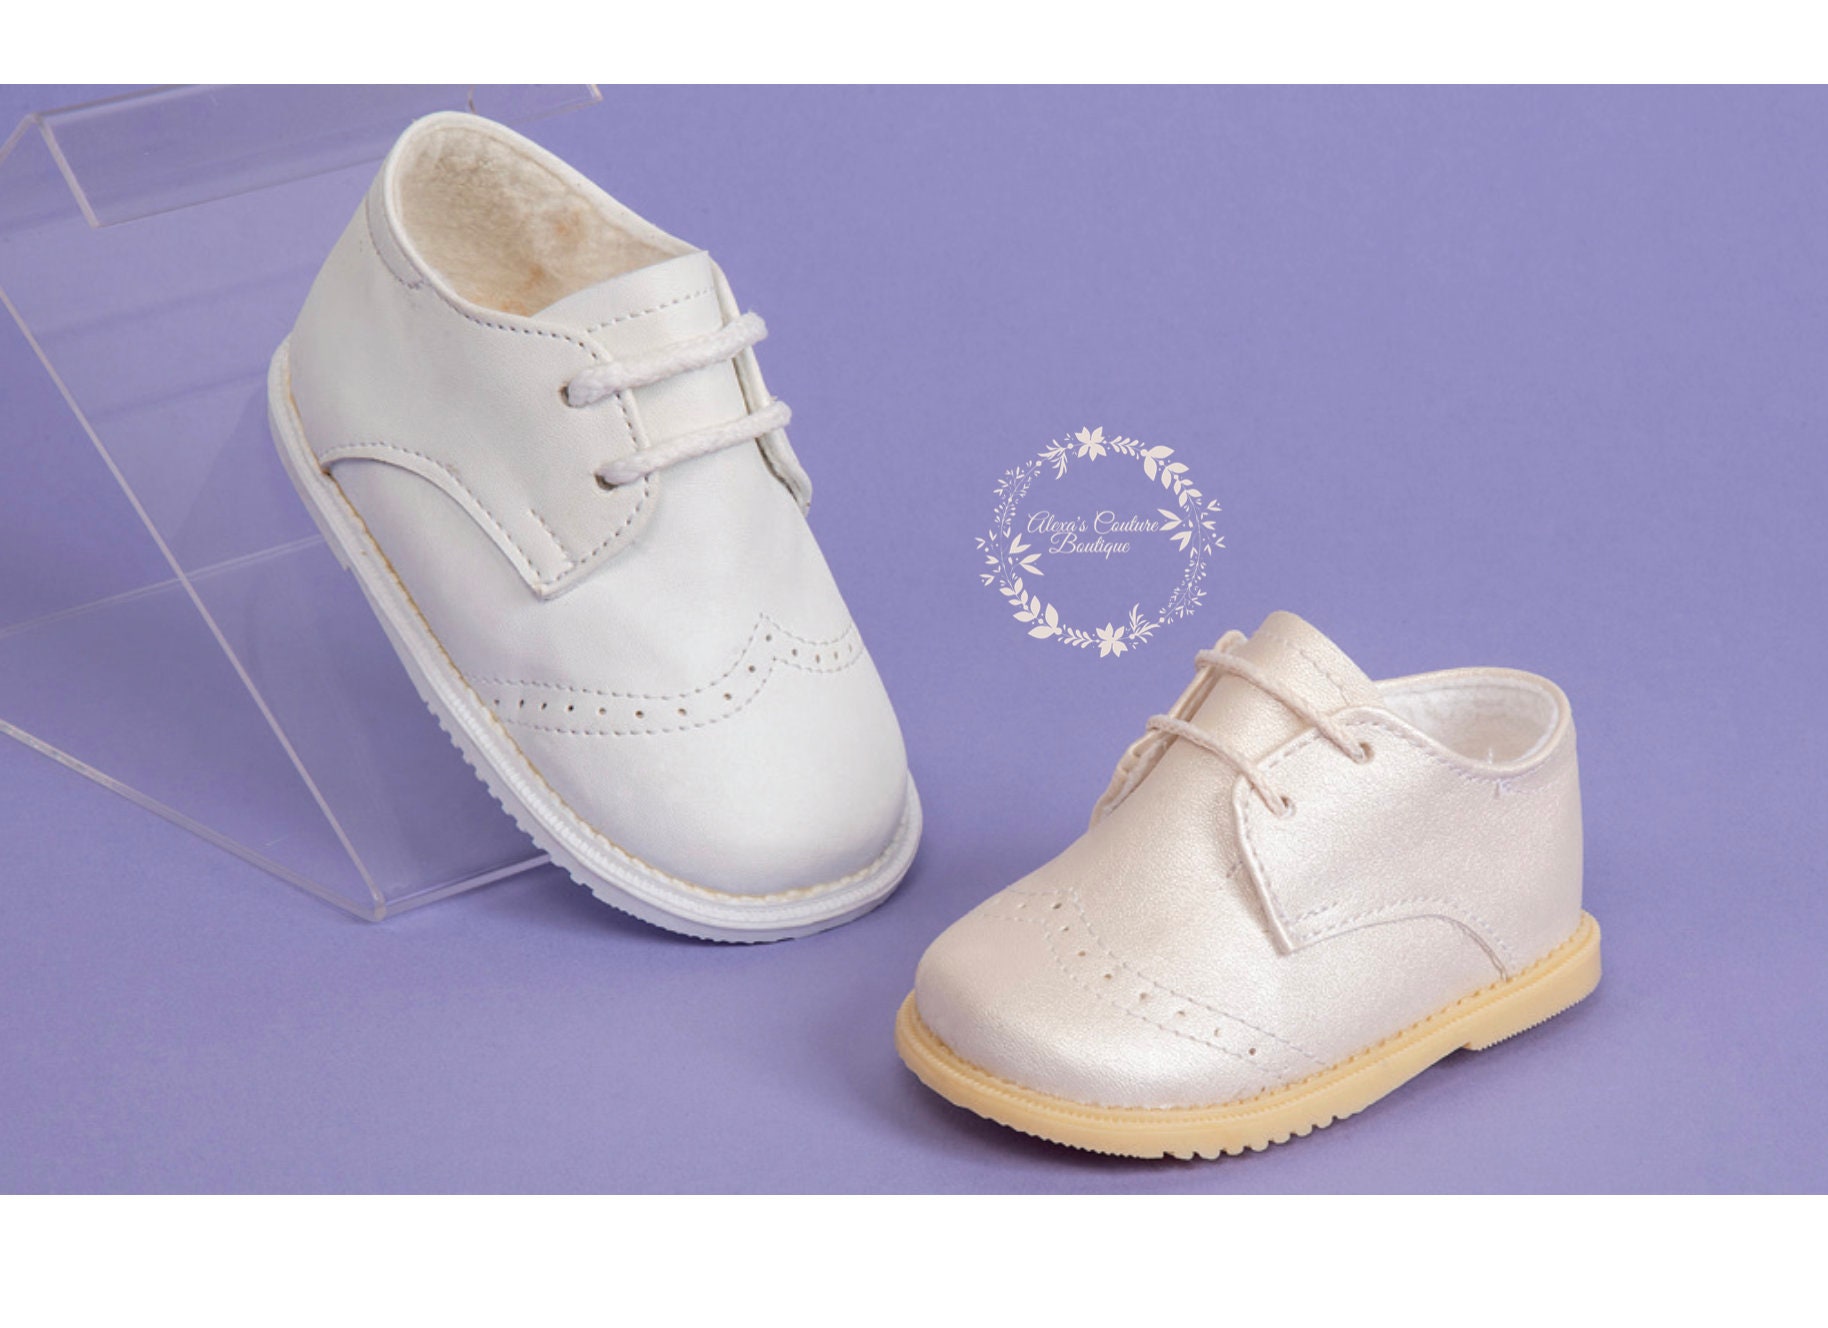 zapatos de bautismo de niño Botines de niño Zapatos Zapatos para niño Patucos y calzado de bebé Zapatos de seda dupion Boy. Zapatos de bautizo de bebé de marfil de seda 